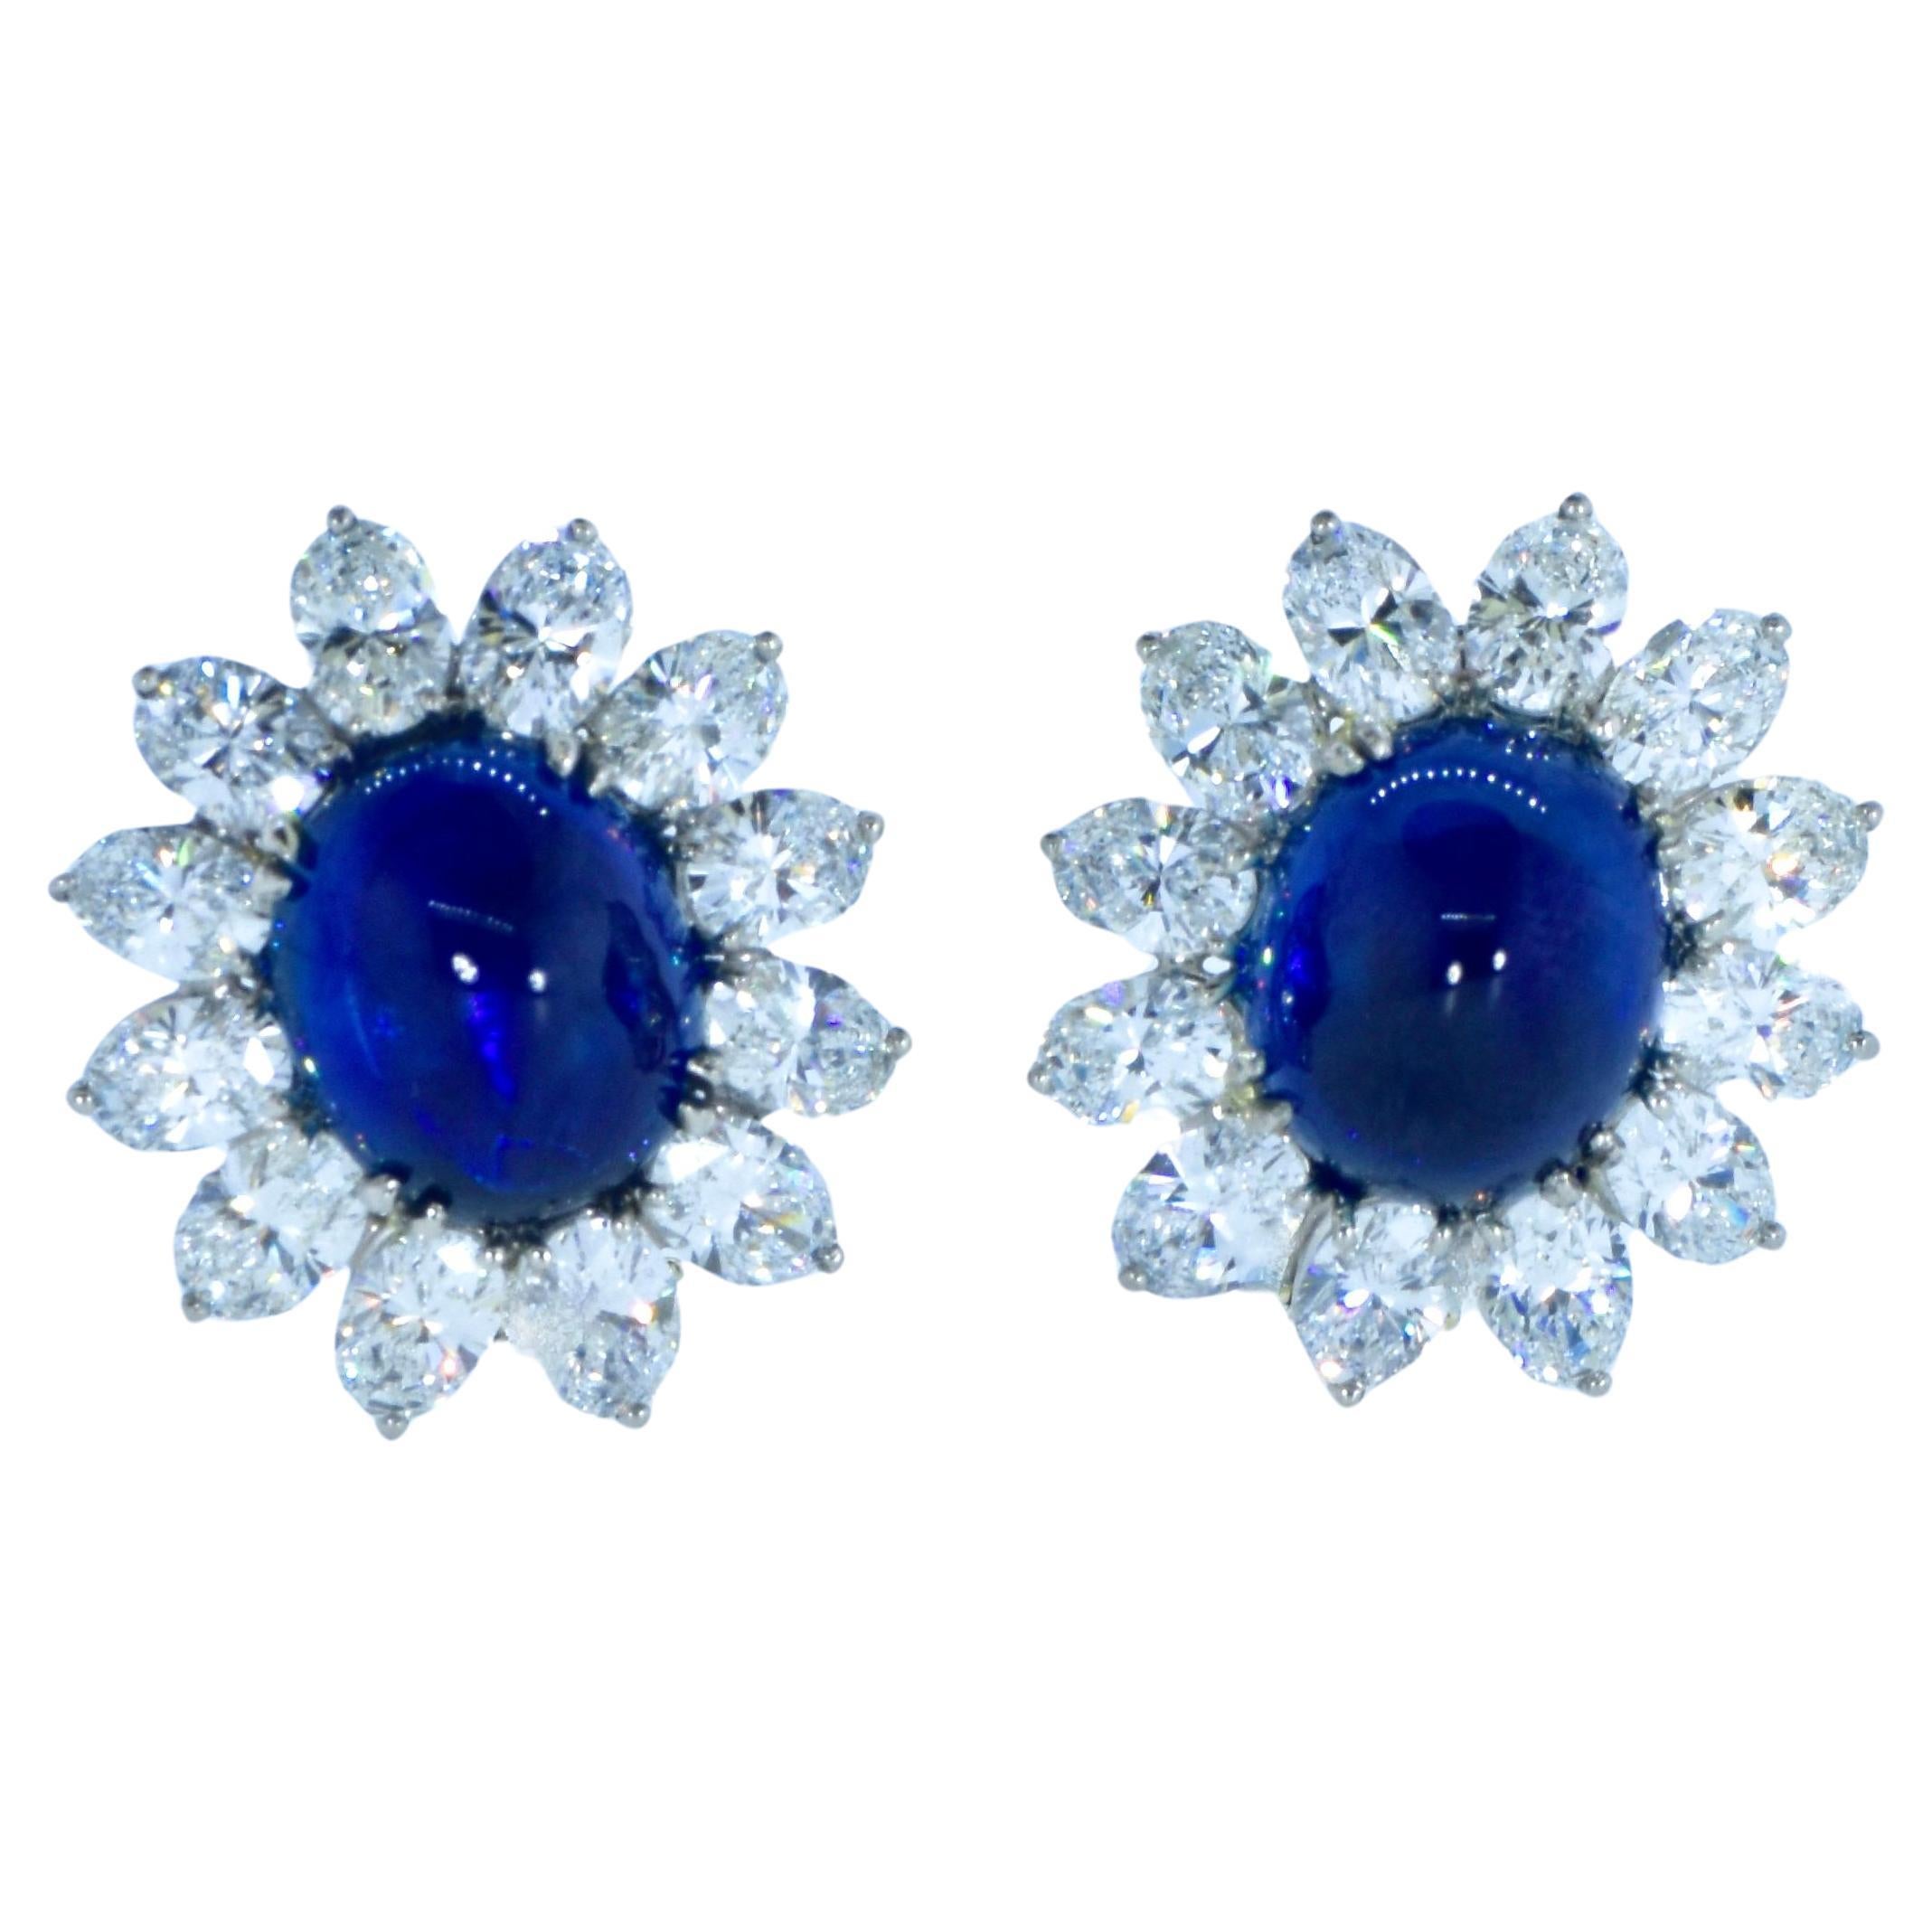 Zertifizierte Vintage-Ohrringe mit natürlichen Saphiren mit einem Gewicht von 16,77 Karat und feinen Diamanten